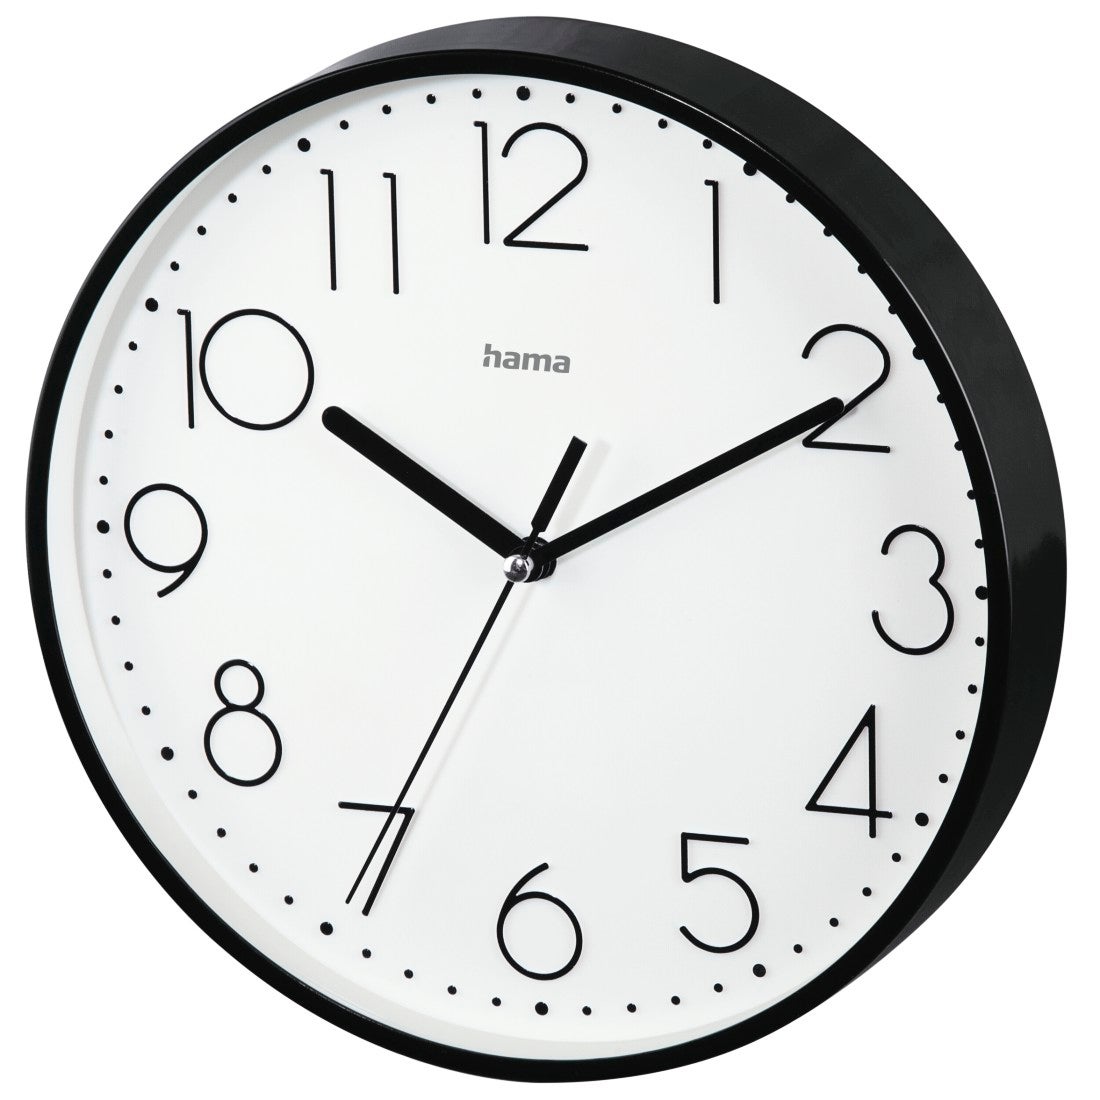 Hama, Reloj de pared analógico silencioso (reloj con números, agujas  silenciosas, diámetro 25cm) Negro.